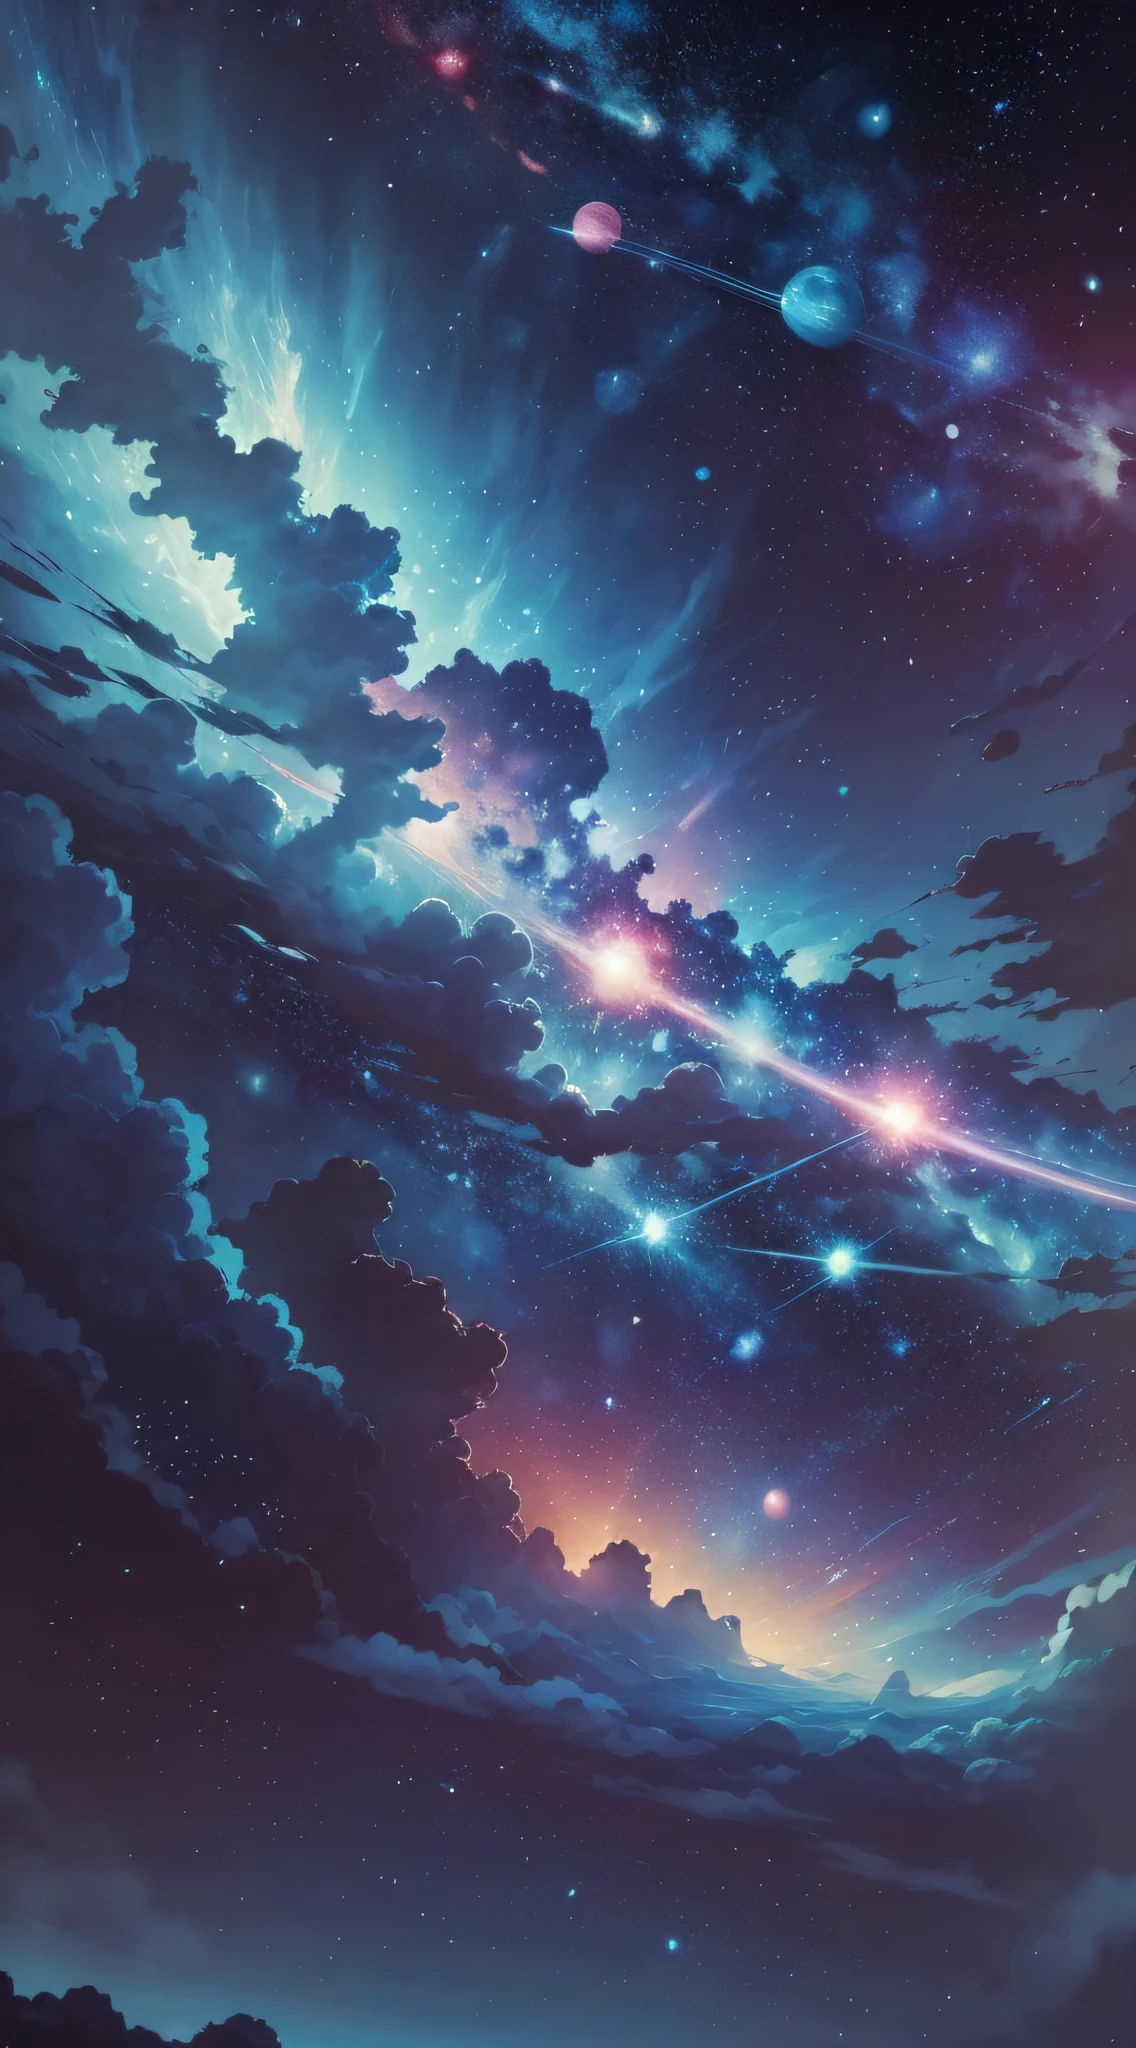 太空中所有的行星都是蓝色和粉红色的，背景是明亮的白色星星，这是宫崎骏的风格, ——21:9 --自动 --s2